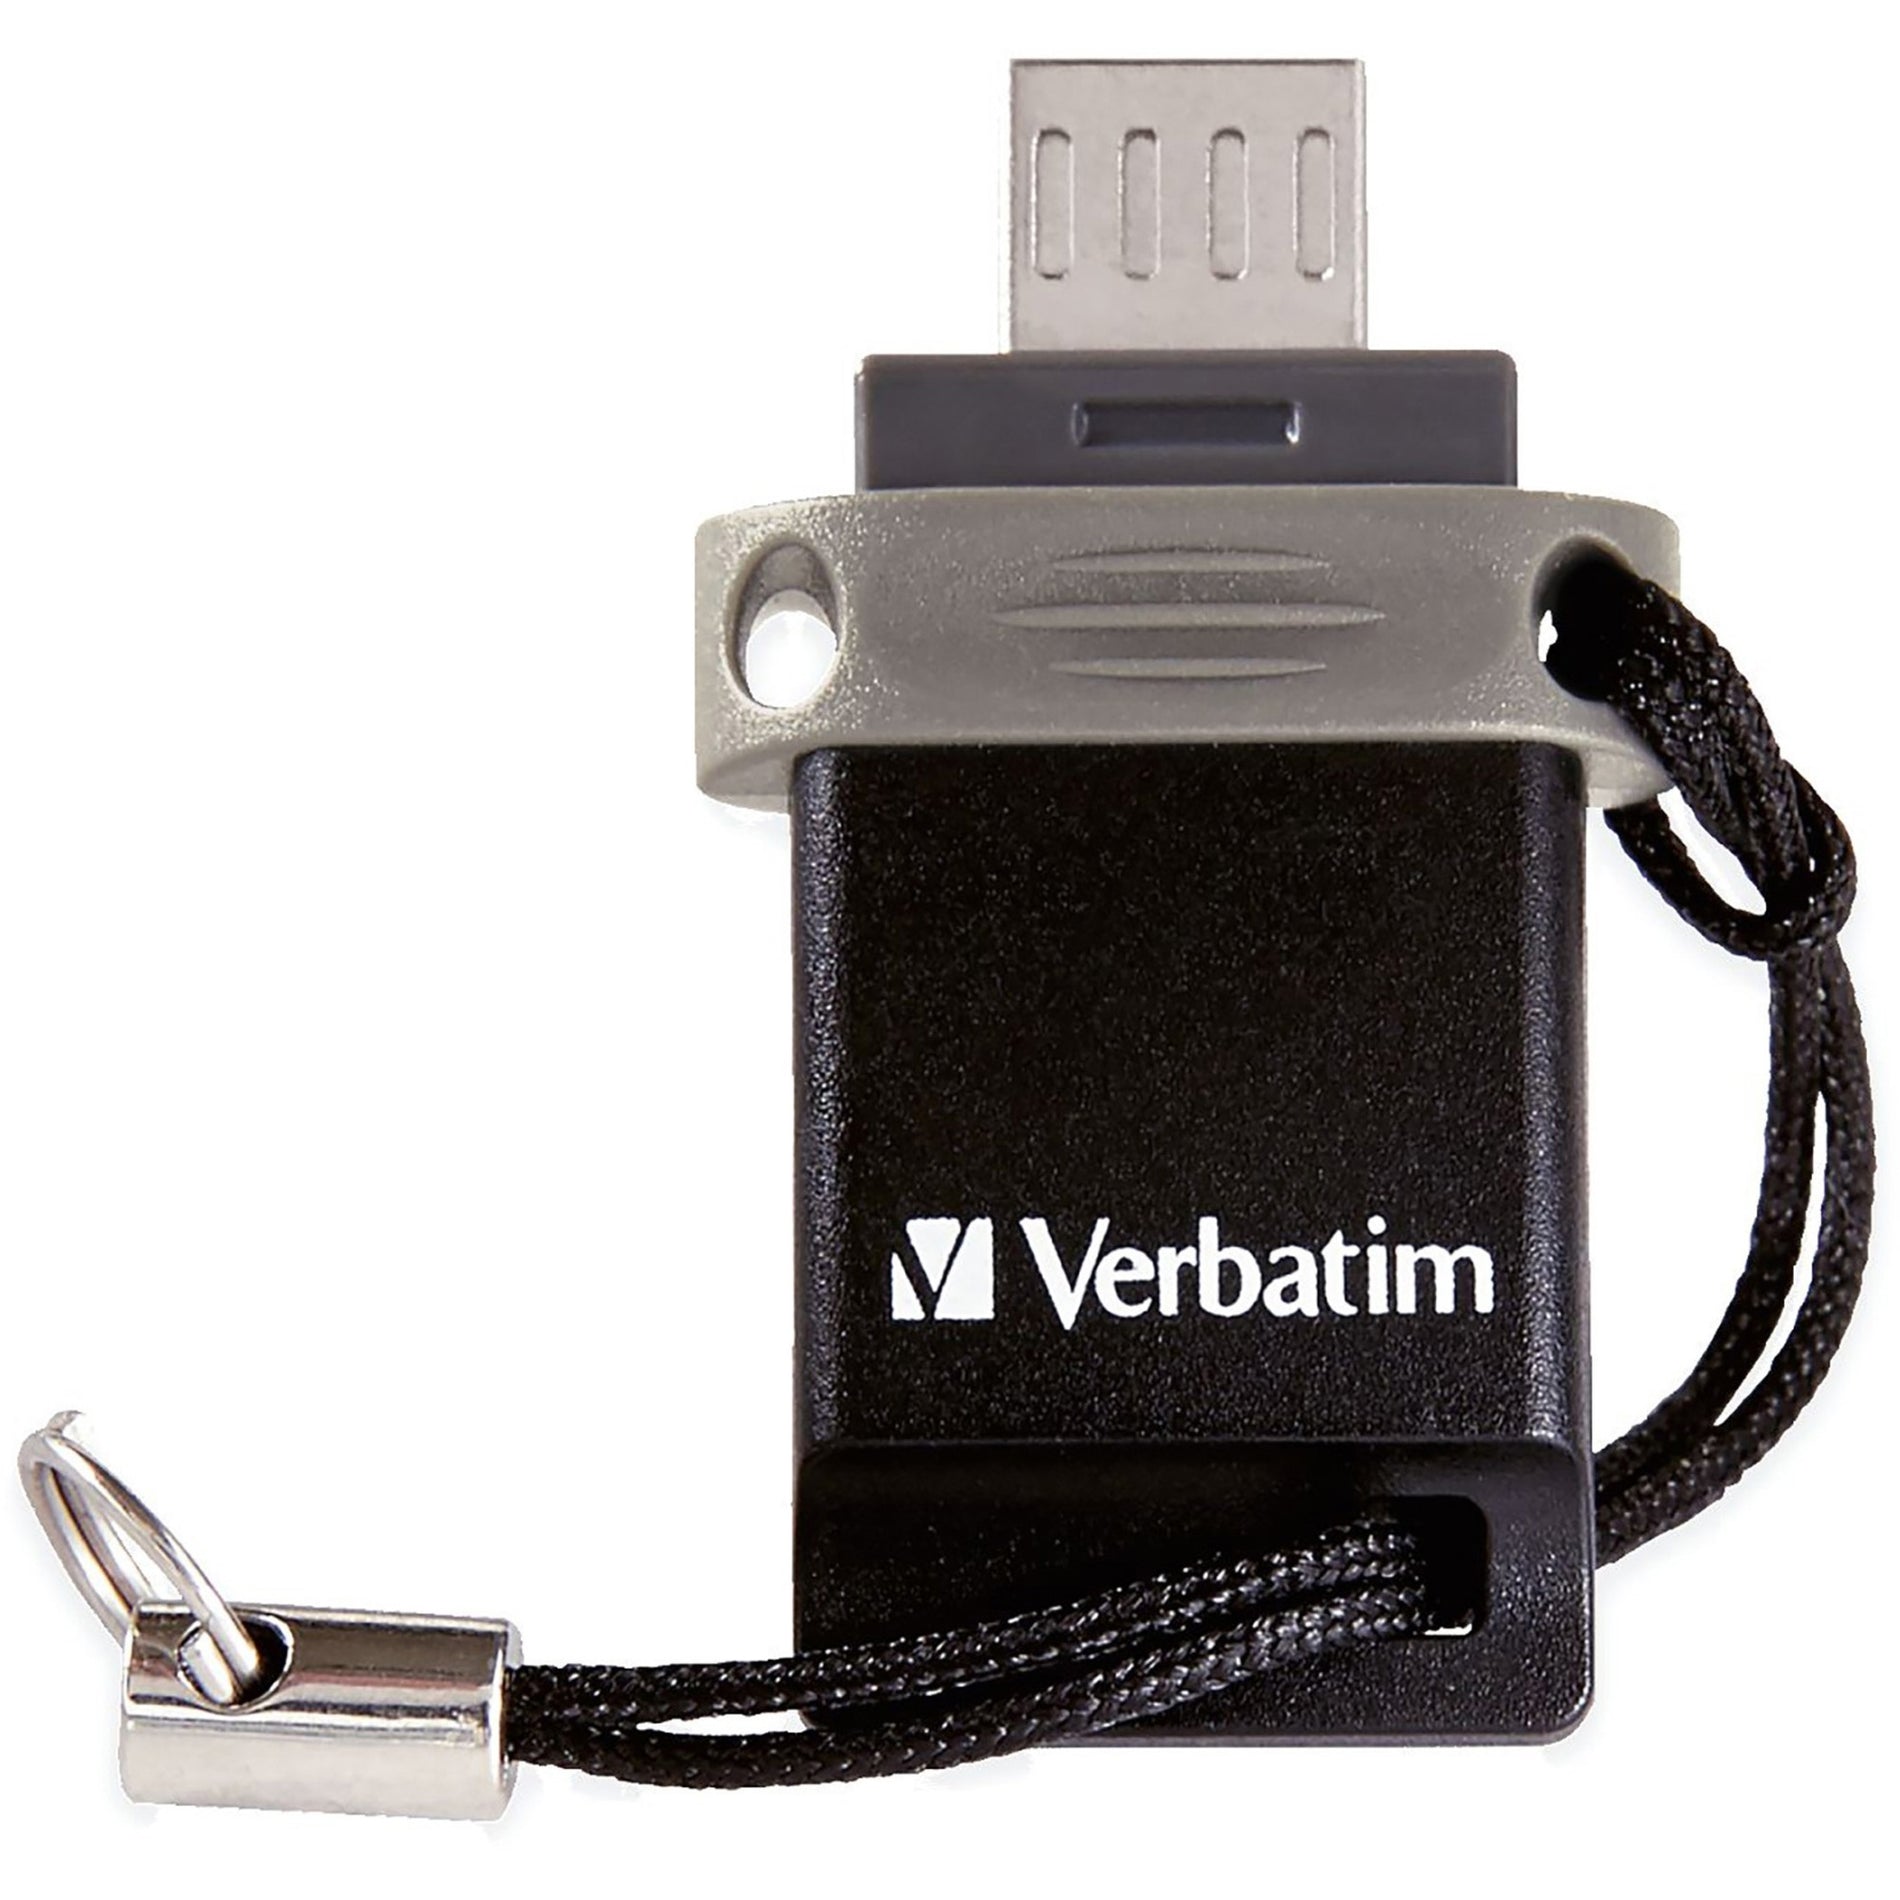 Verbatim 99140 Almacenar 'n' Go Dual USB Flash Drive 64GB Negro/Gris. Marca: Verbatim.